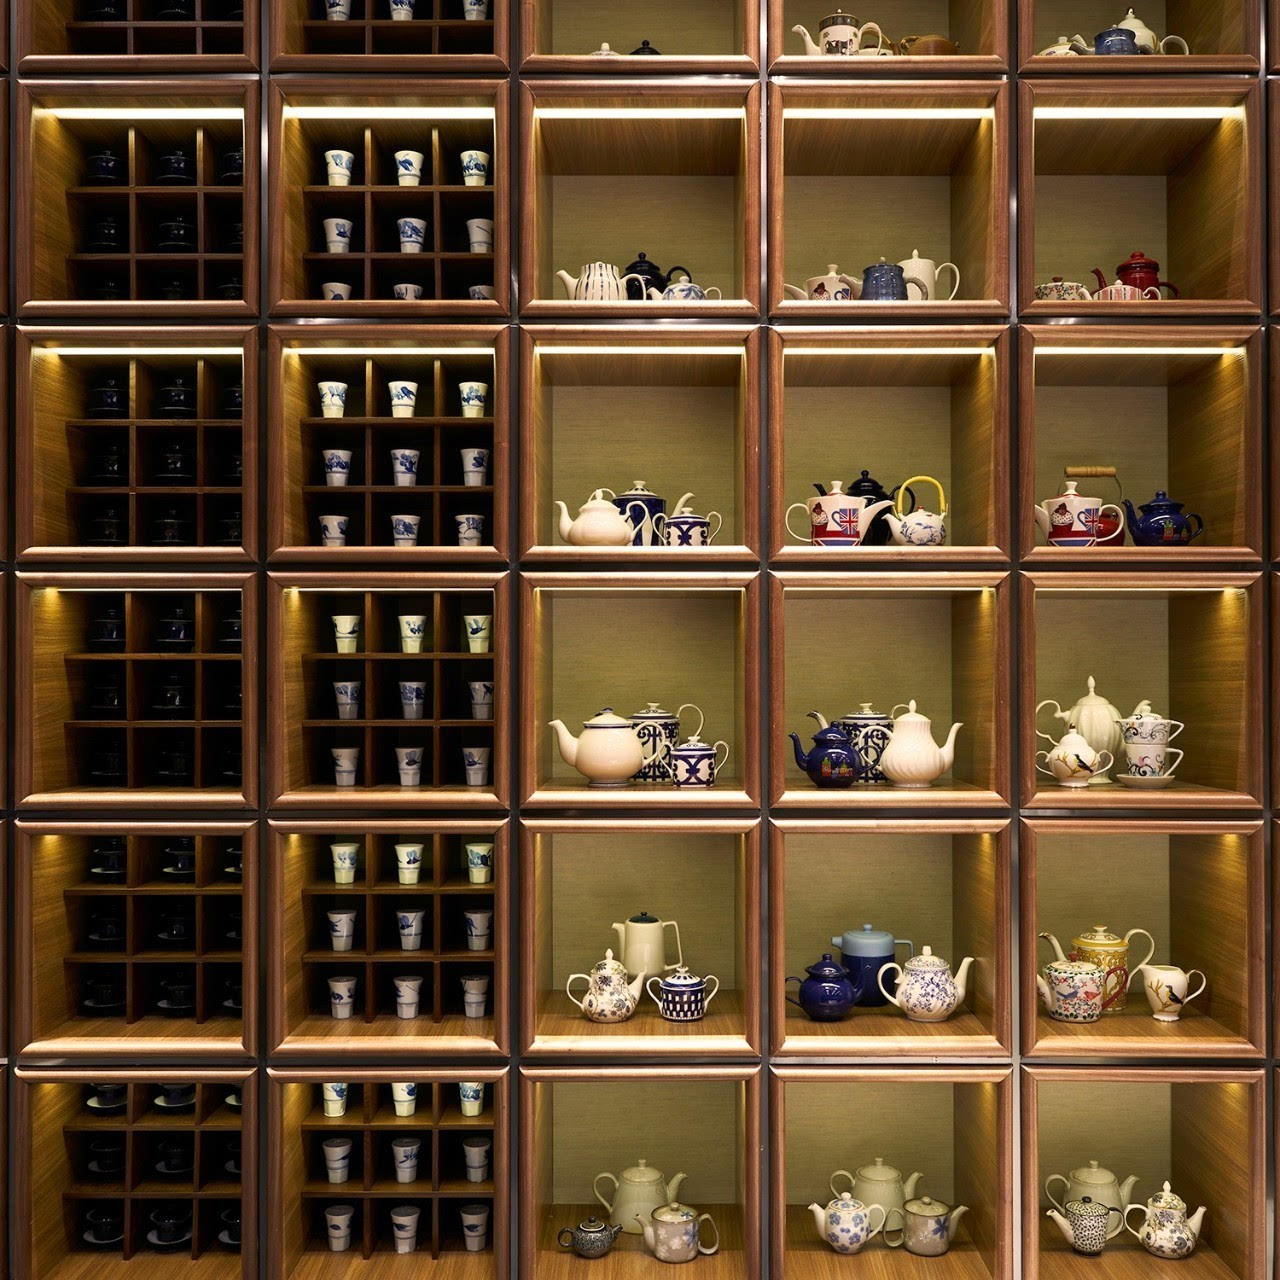 茶具展示与陈列的方式图片